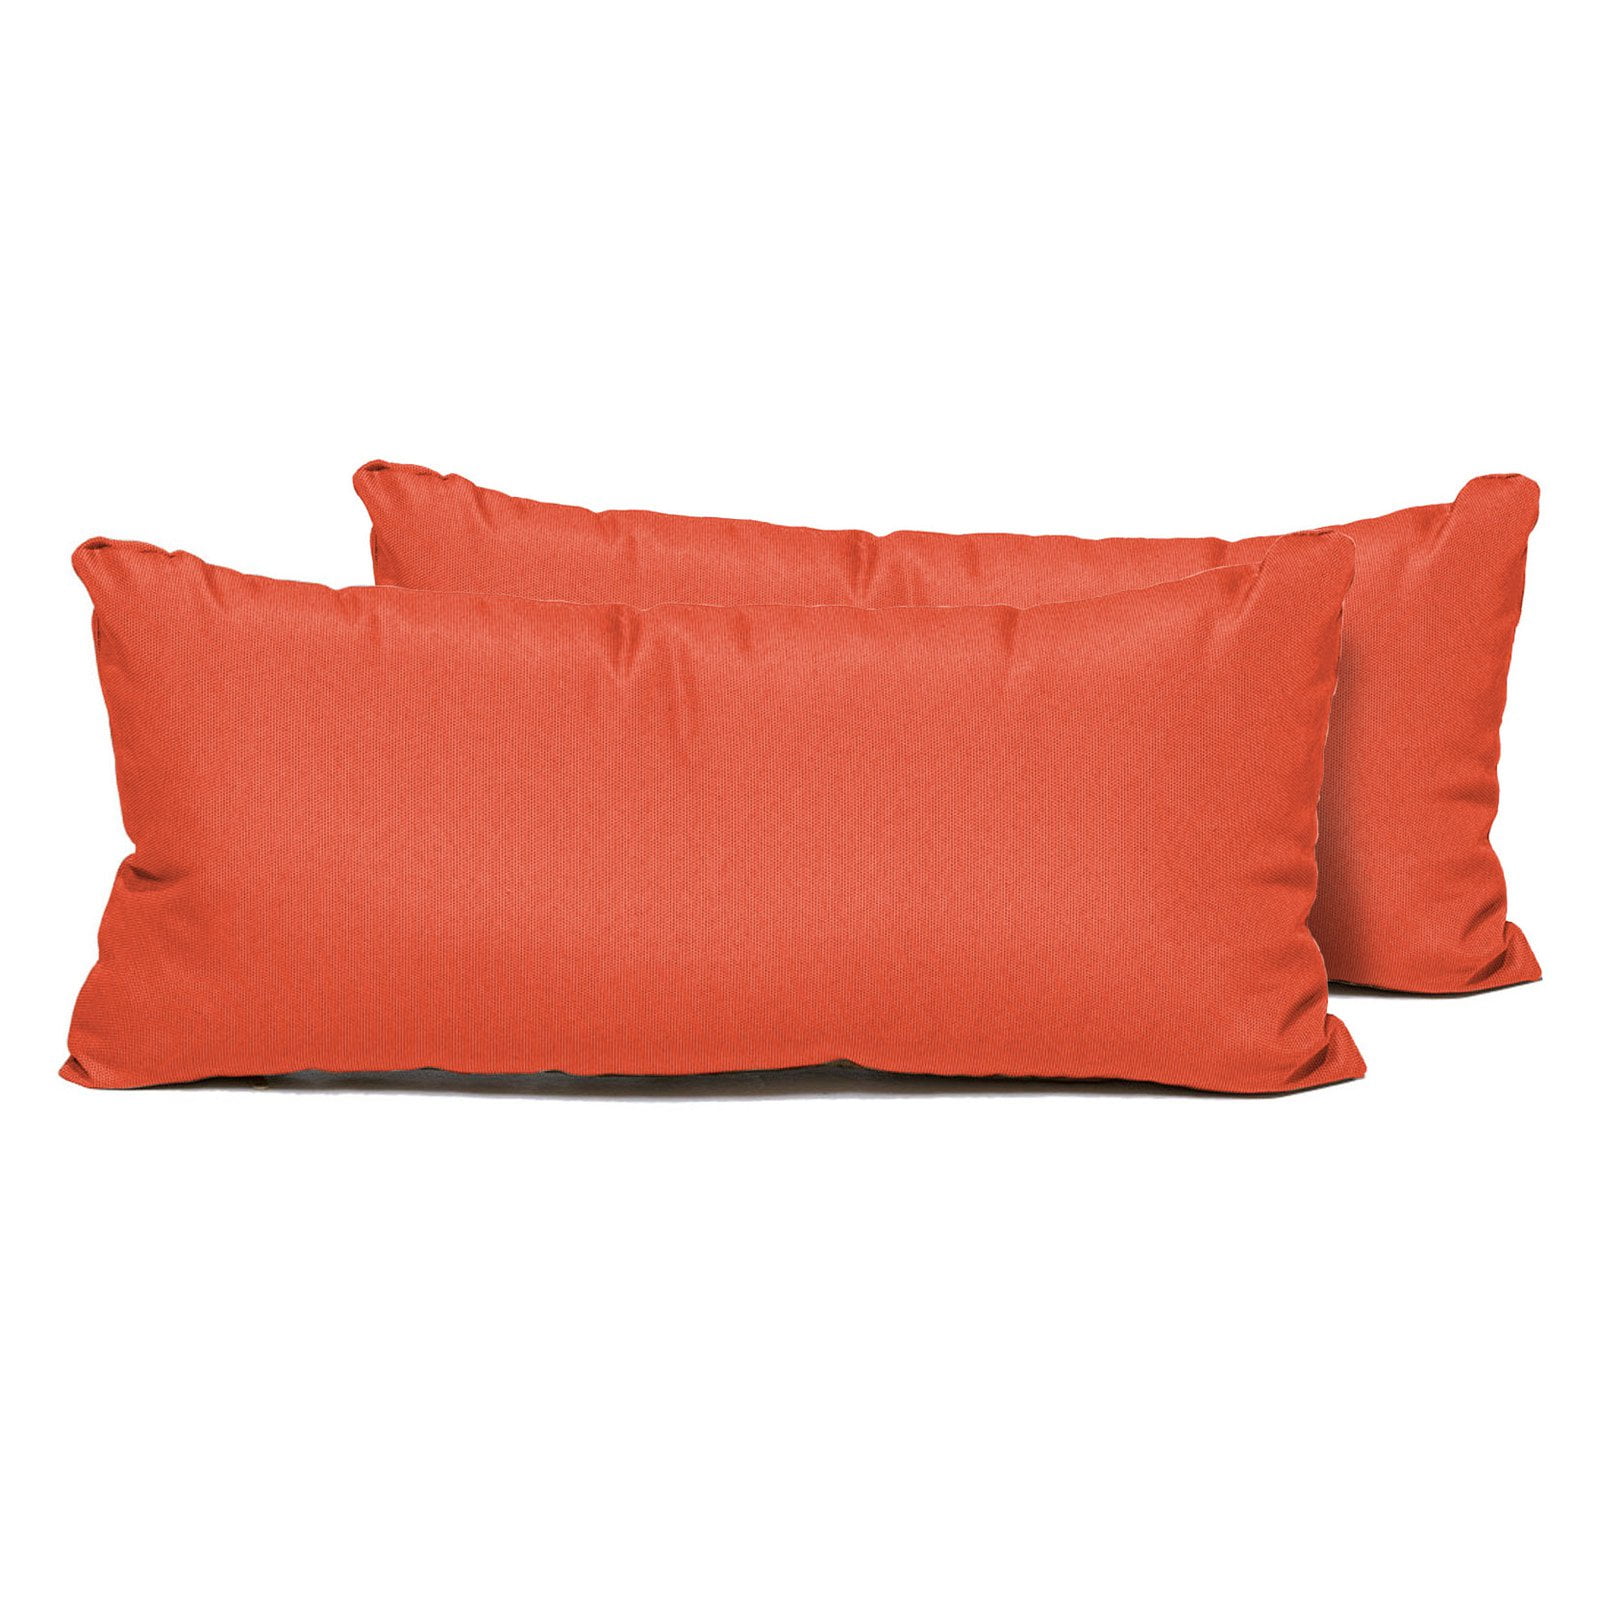 Papaya Cushion-natural Fruit Pillow-Plant Pillow-Premium Pillow